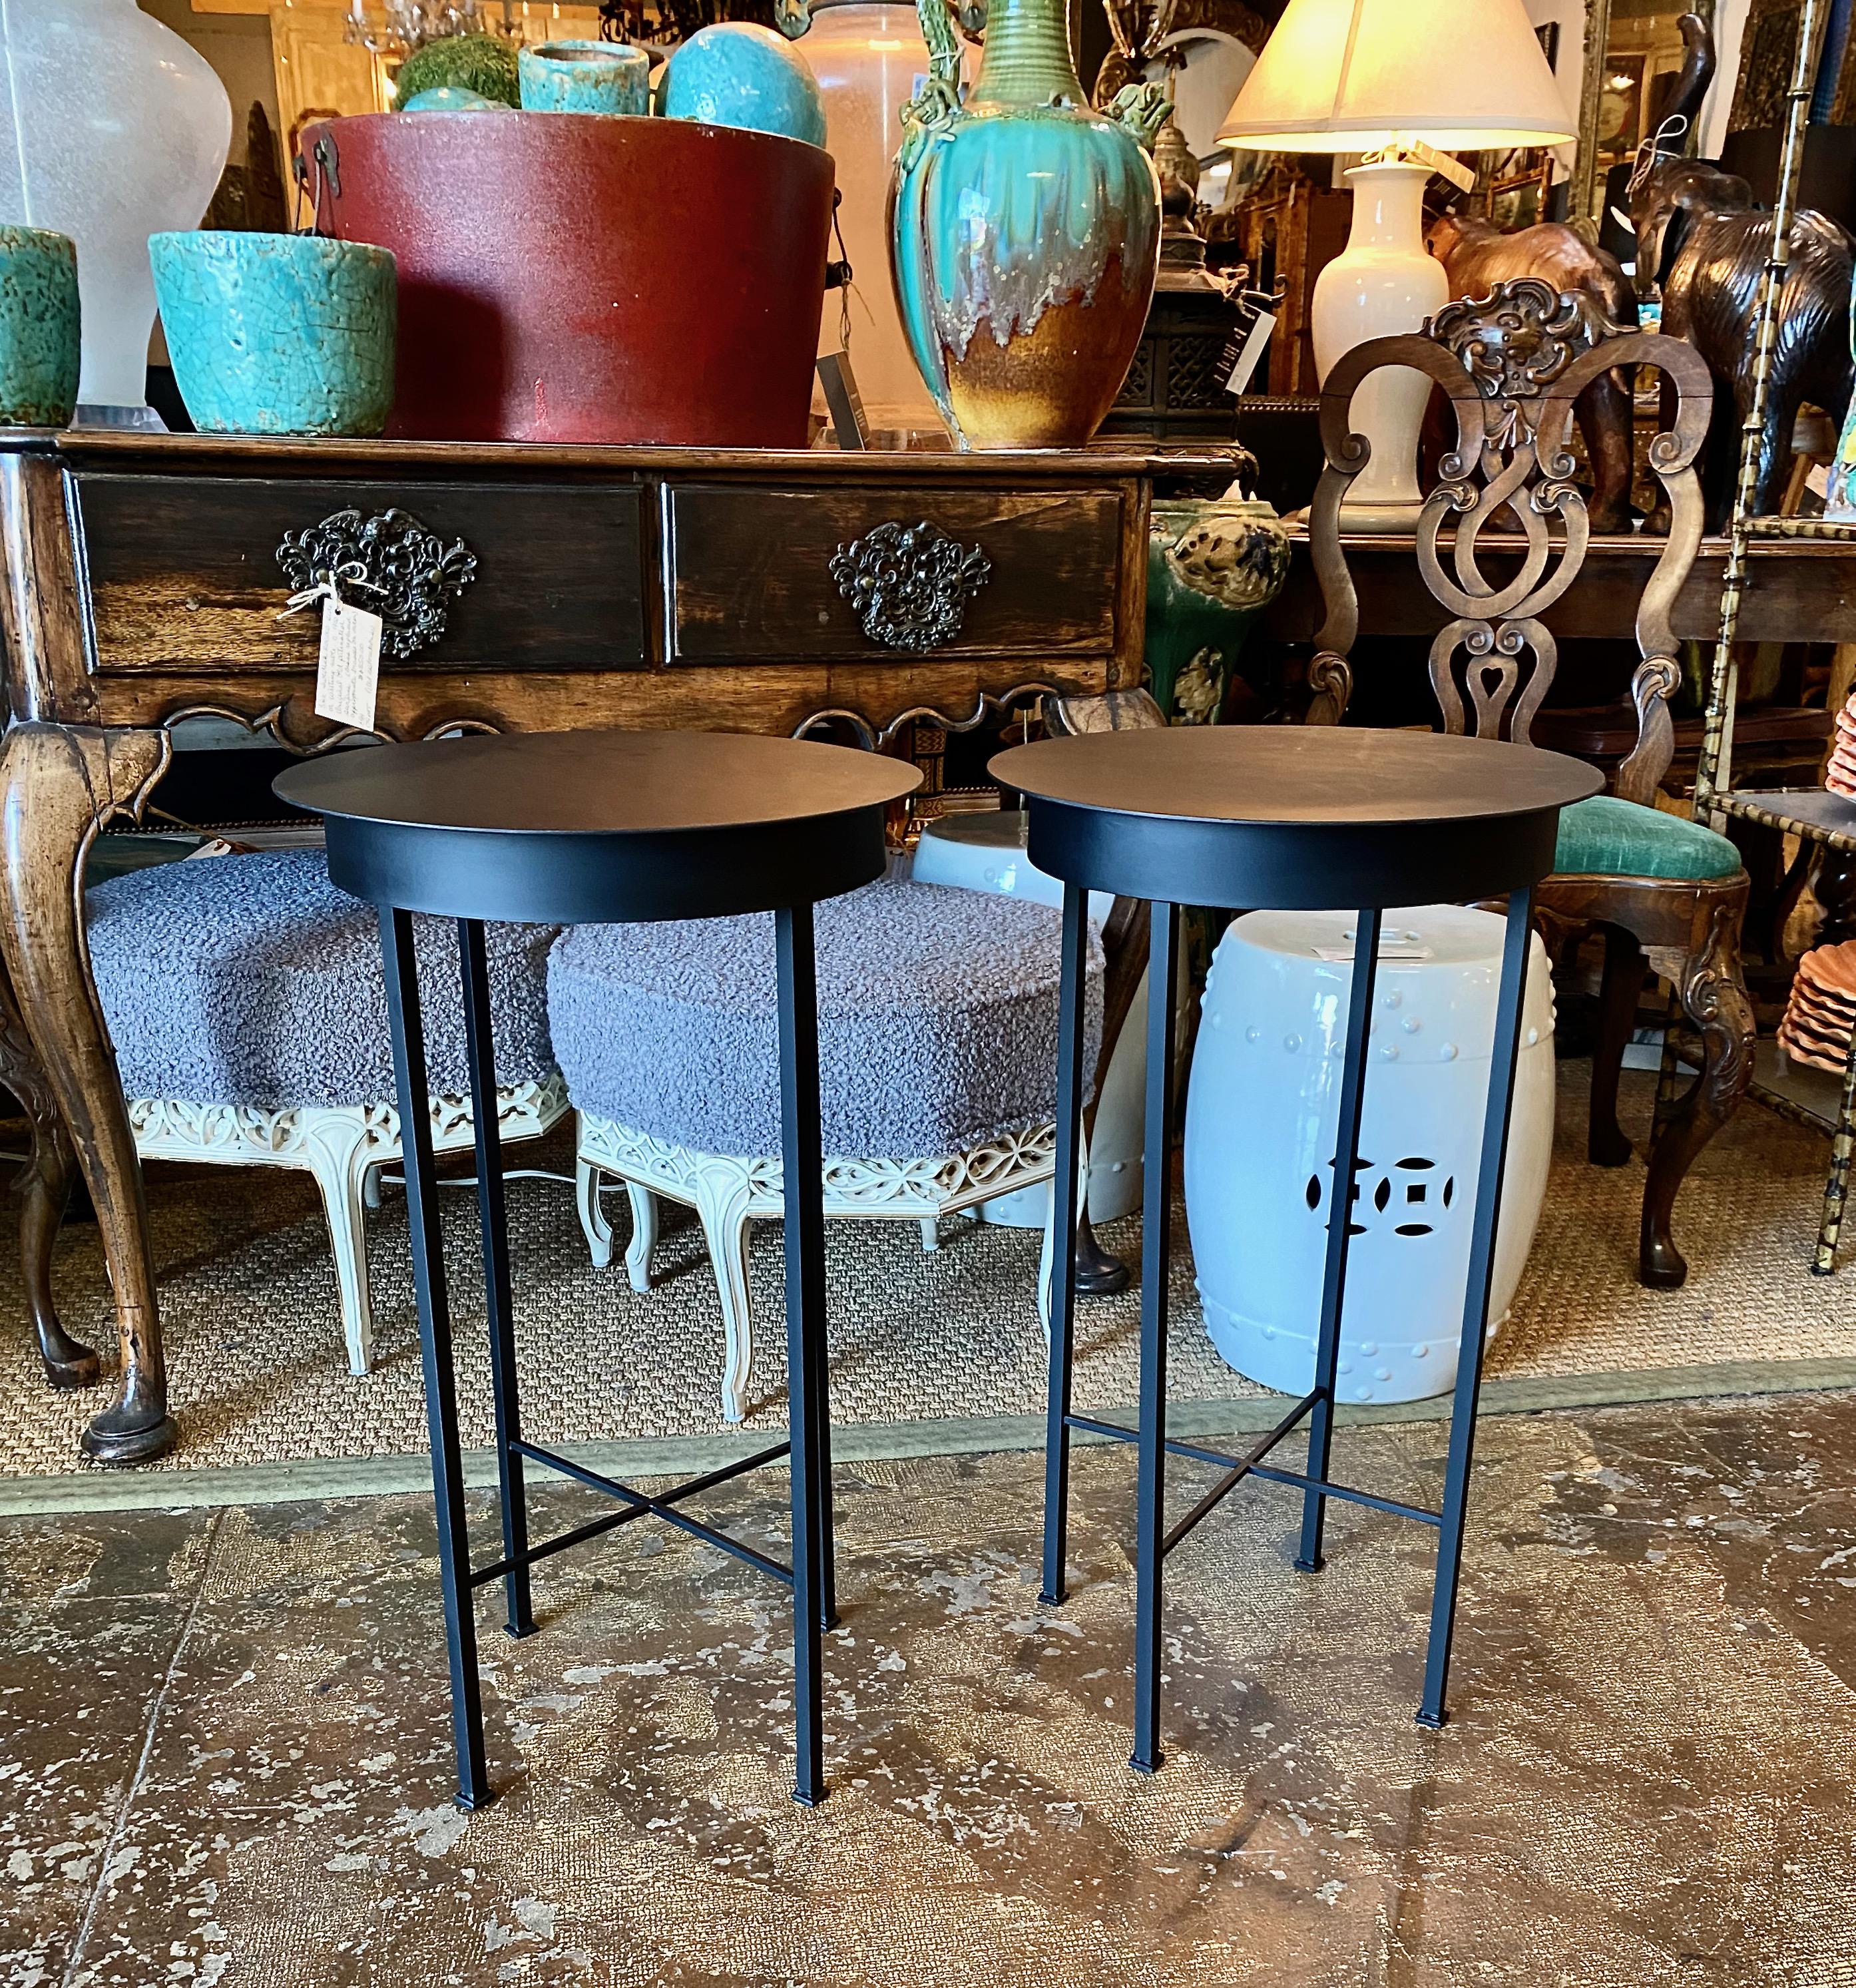 Dies ist ein schickes Paar Beistelltische oder Ständer aus Eisen, die von einem Paar französischer Tische inspiriert wurden. Diese charmanten Tische sind sowohl für den Innen- als auch für den Außenbereich geeignet. Wir haben vor einigen Monaten ein